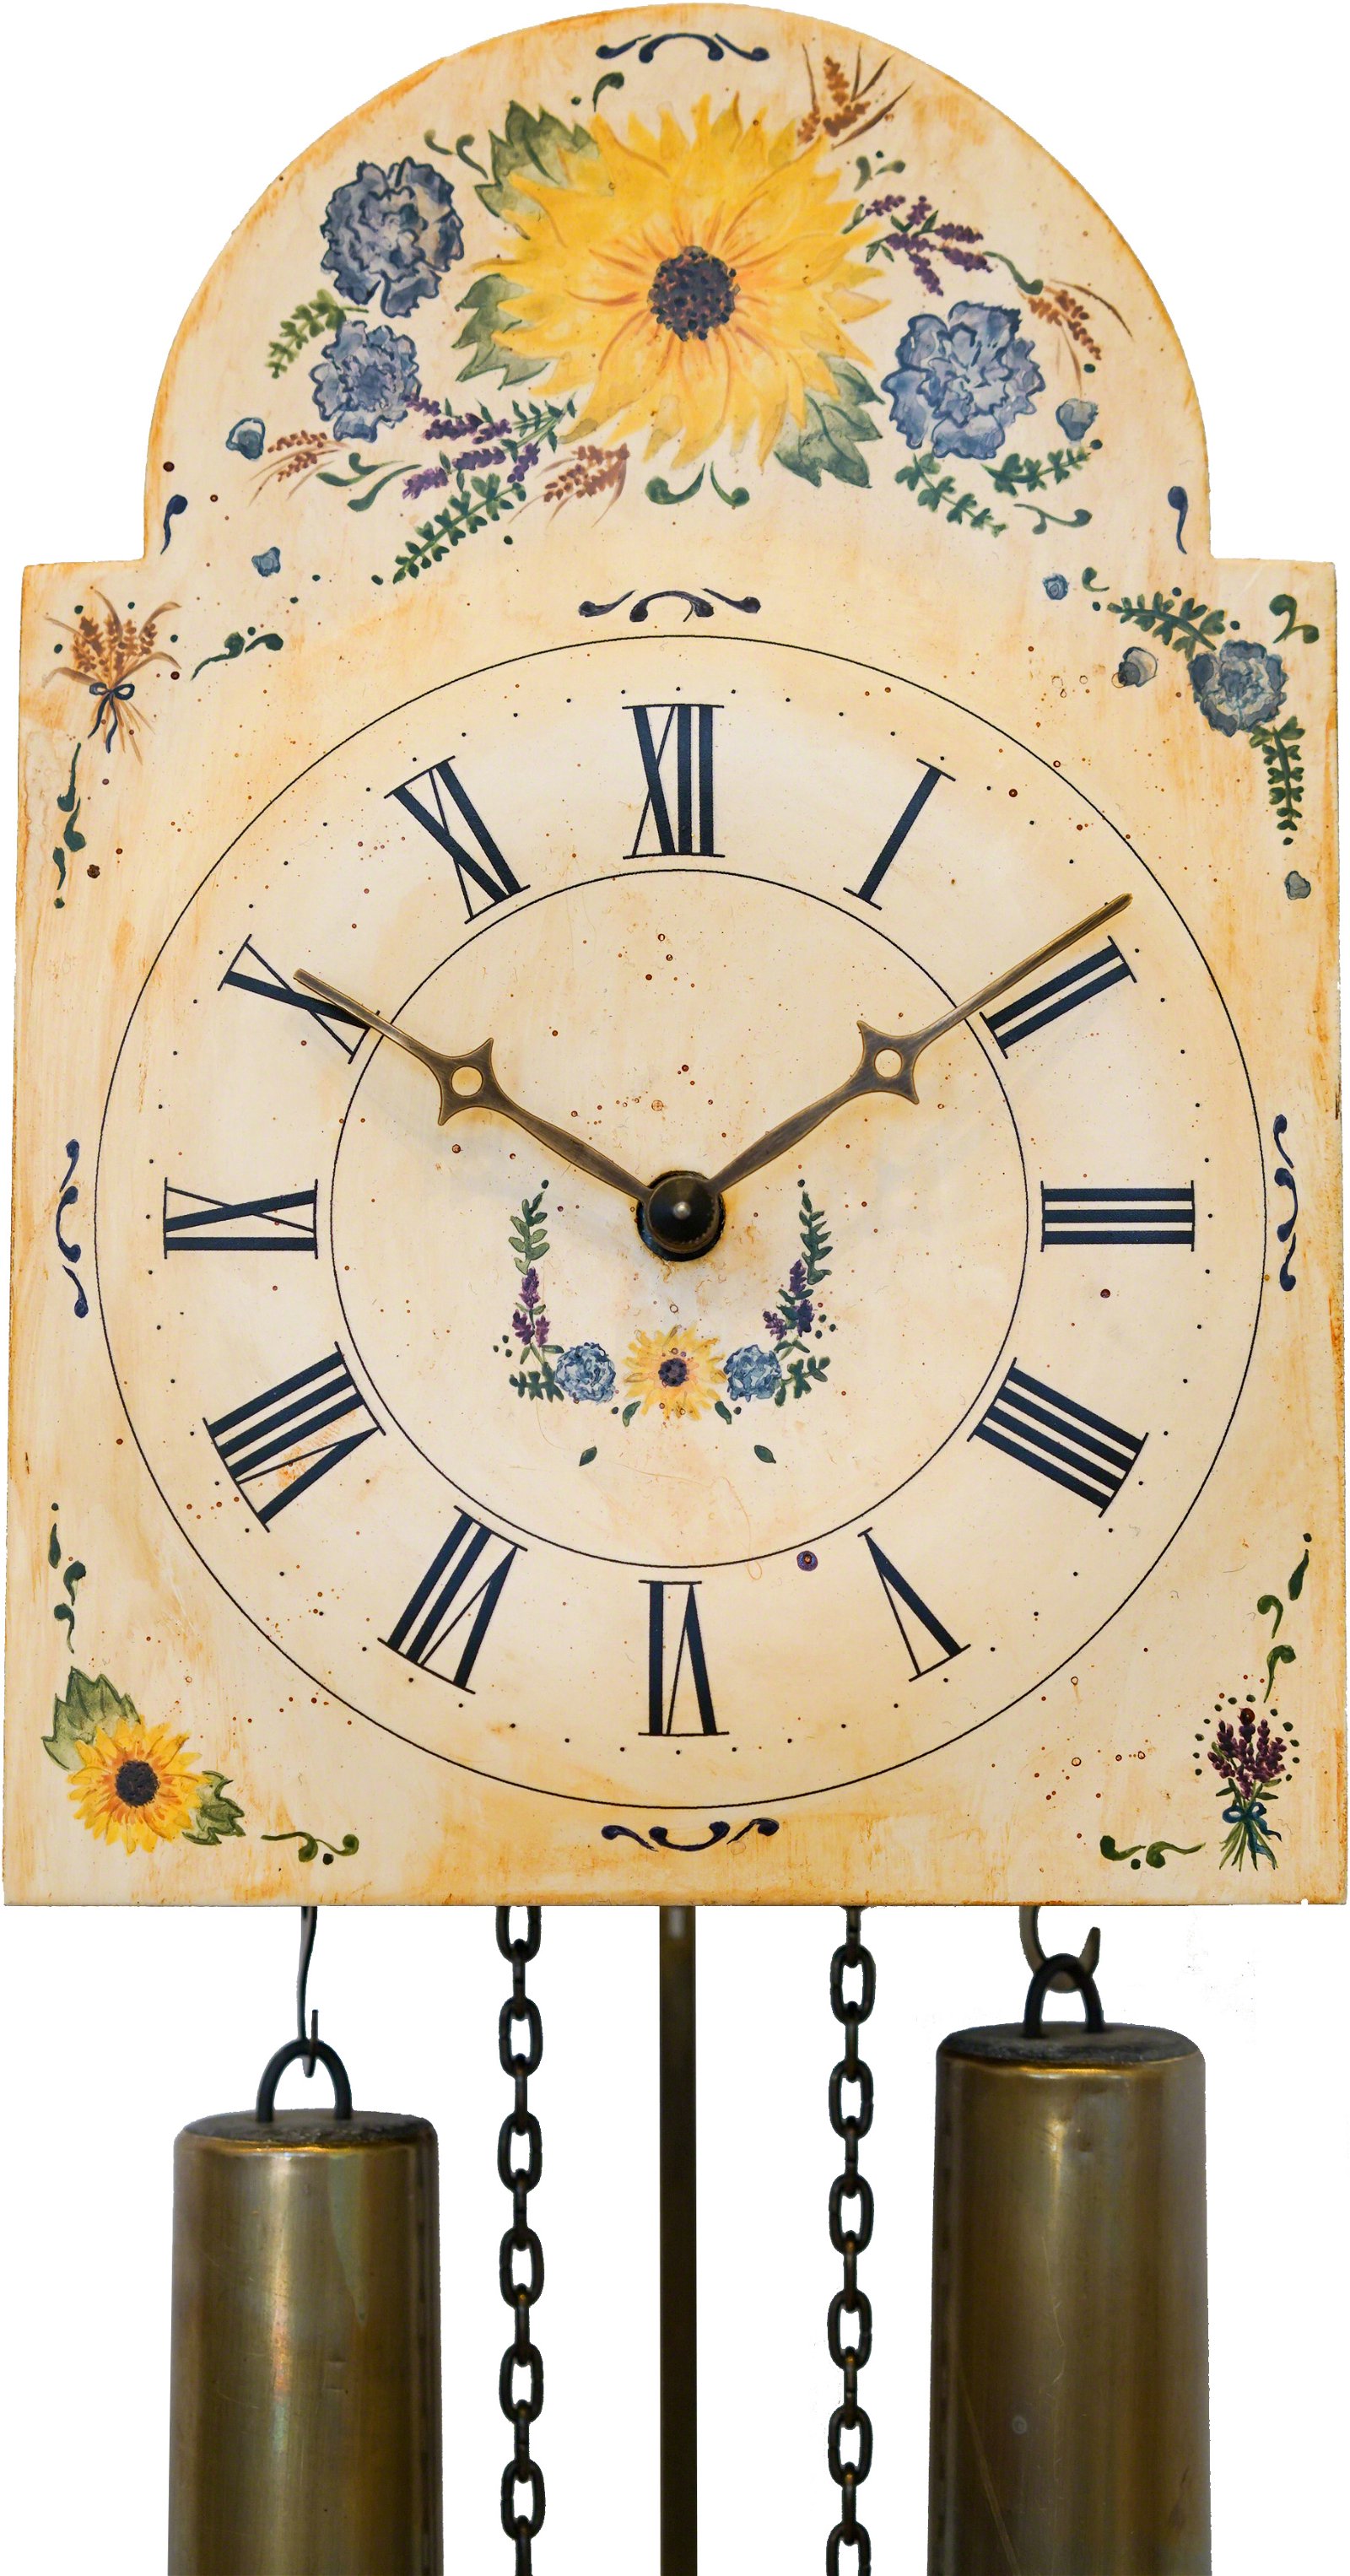 Reloj de cuco con fachada pintada movimiento mecánico de 8 días 26cm de Rombach & Haas